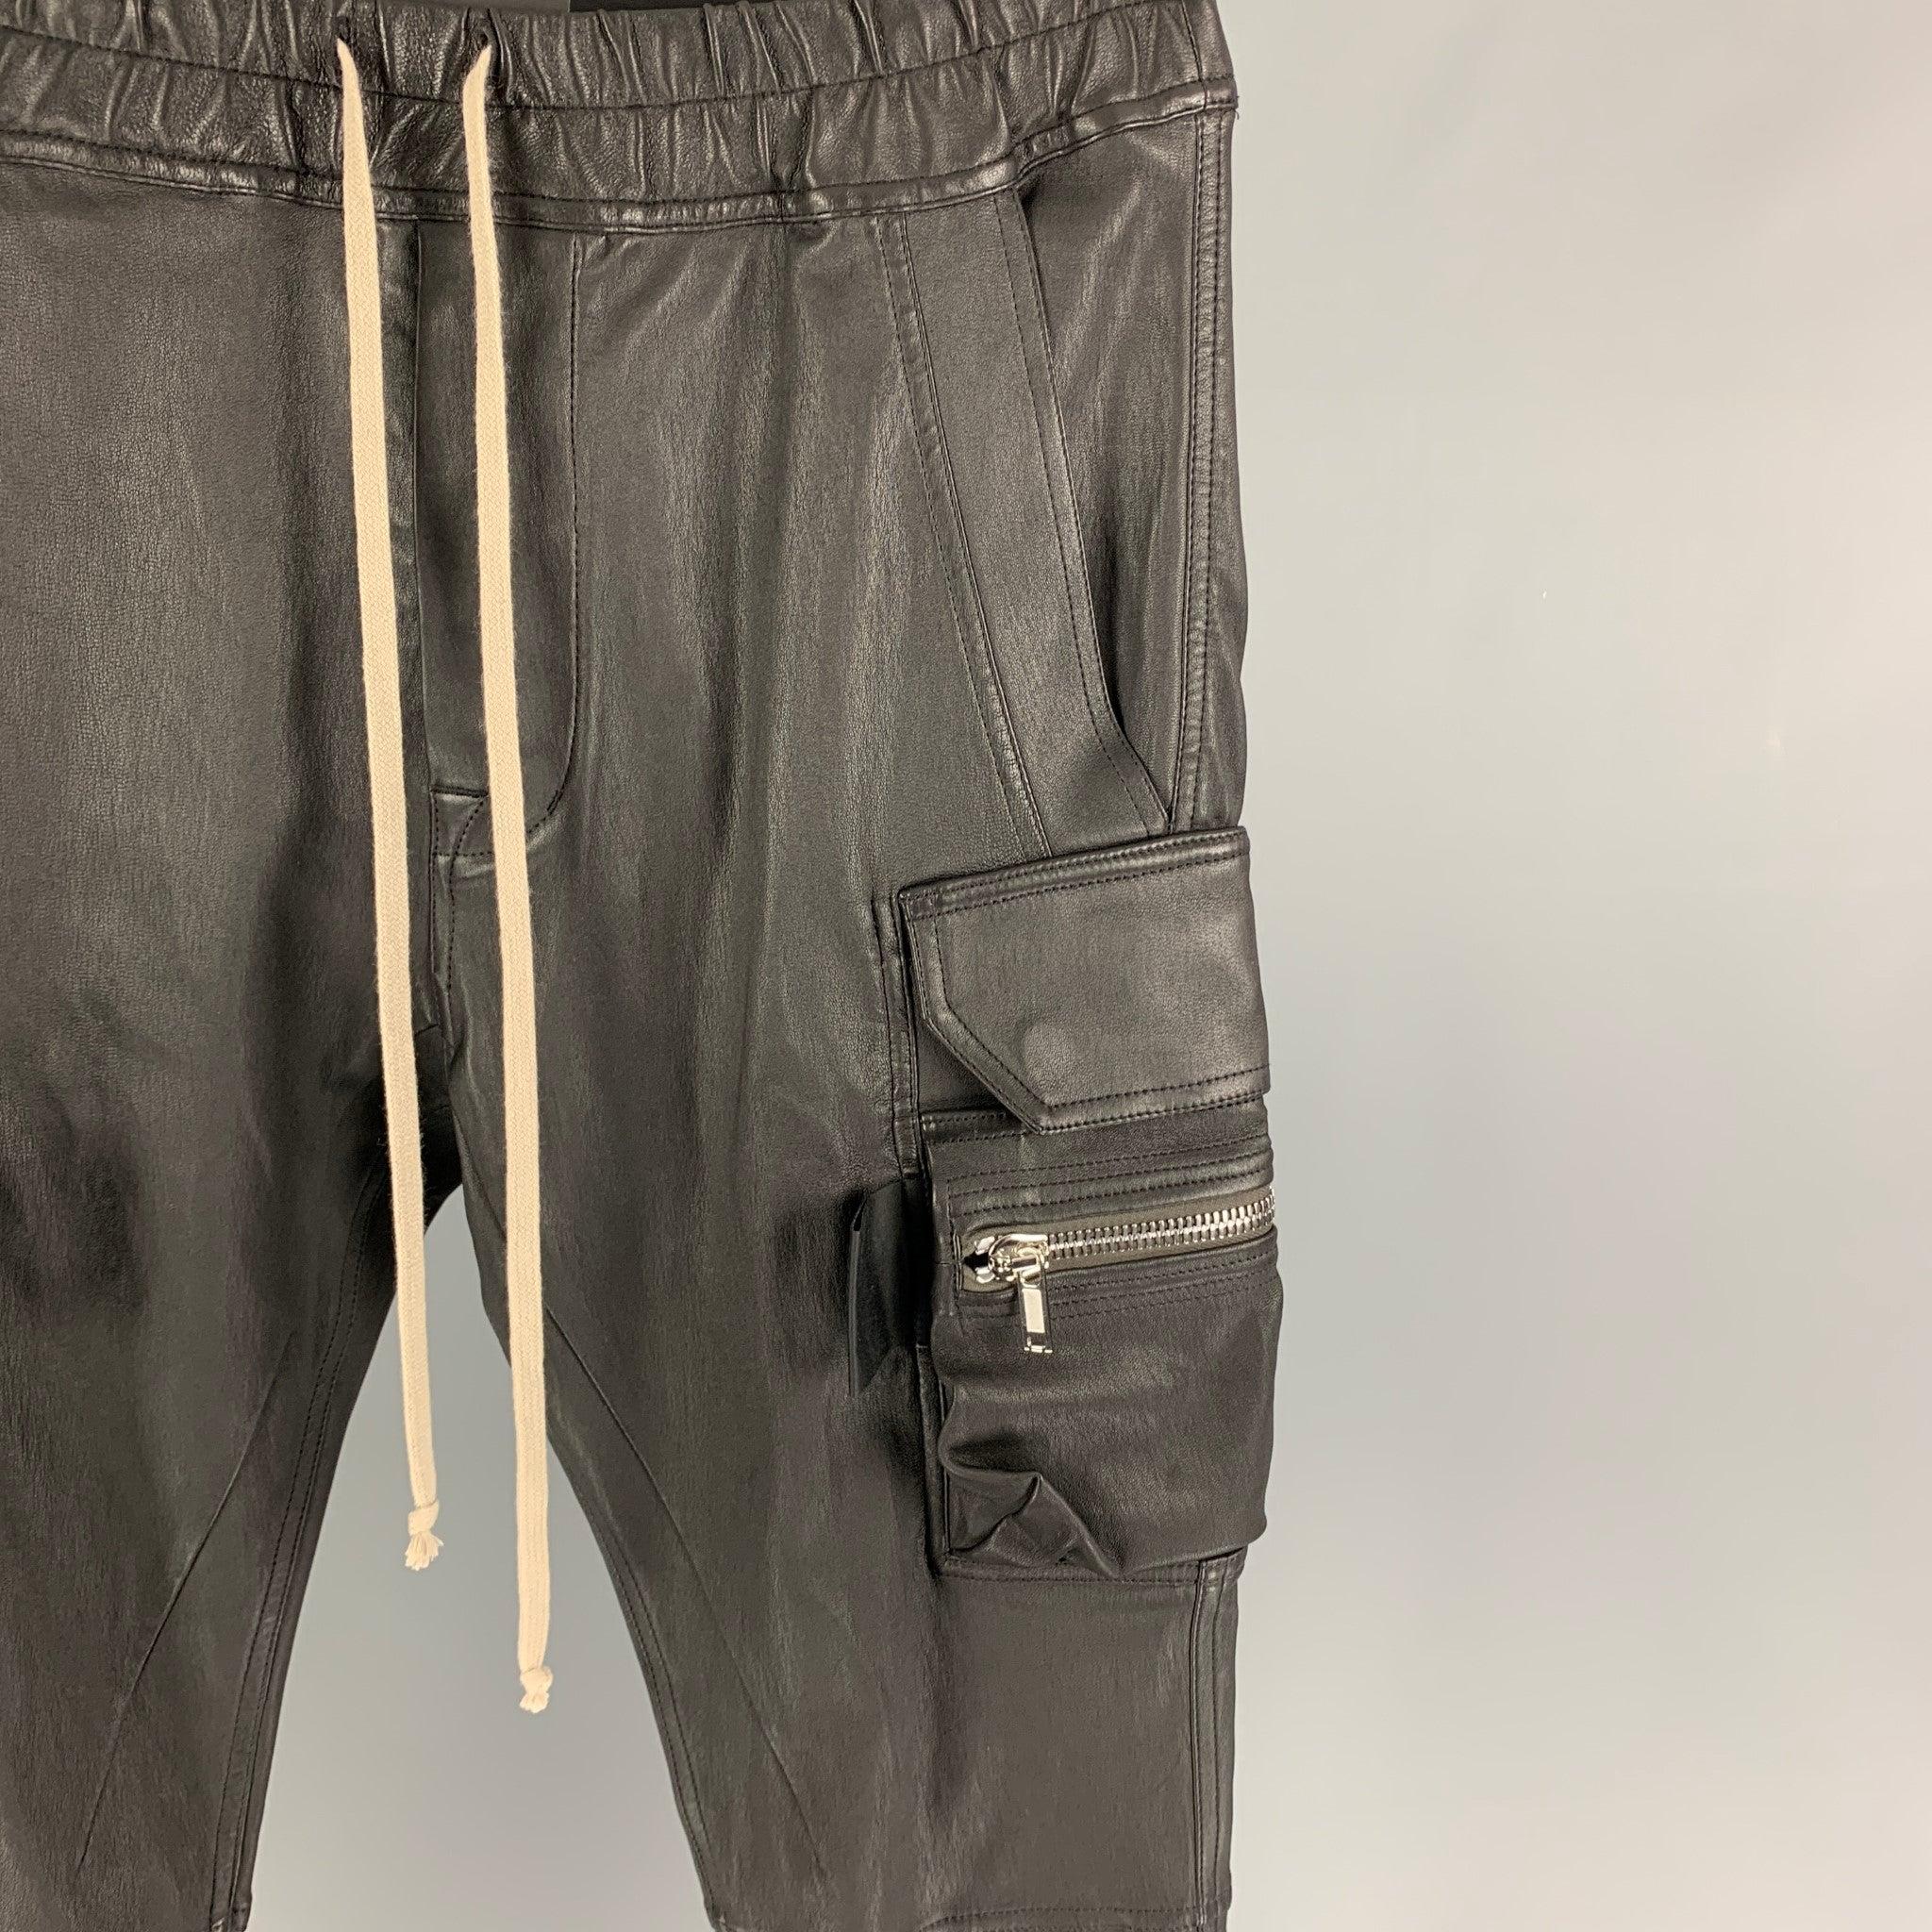 Le pantalon Gethsemane FW 21 'Mastodon Cargo' de RICK OWENS est réalisé dans un mélange de cuir extensible noir et présente une coupe ajustée, des accessoires argentés, une taille élastique, un cordon de serrage, des poignets élastiques et une